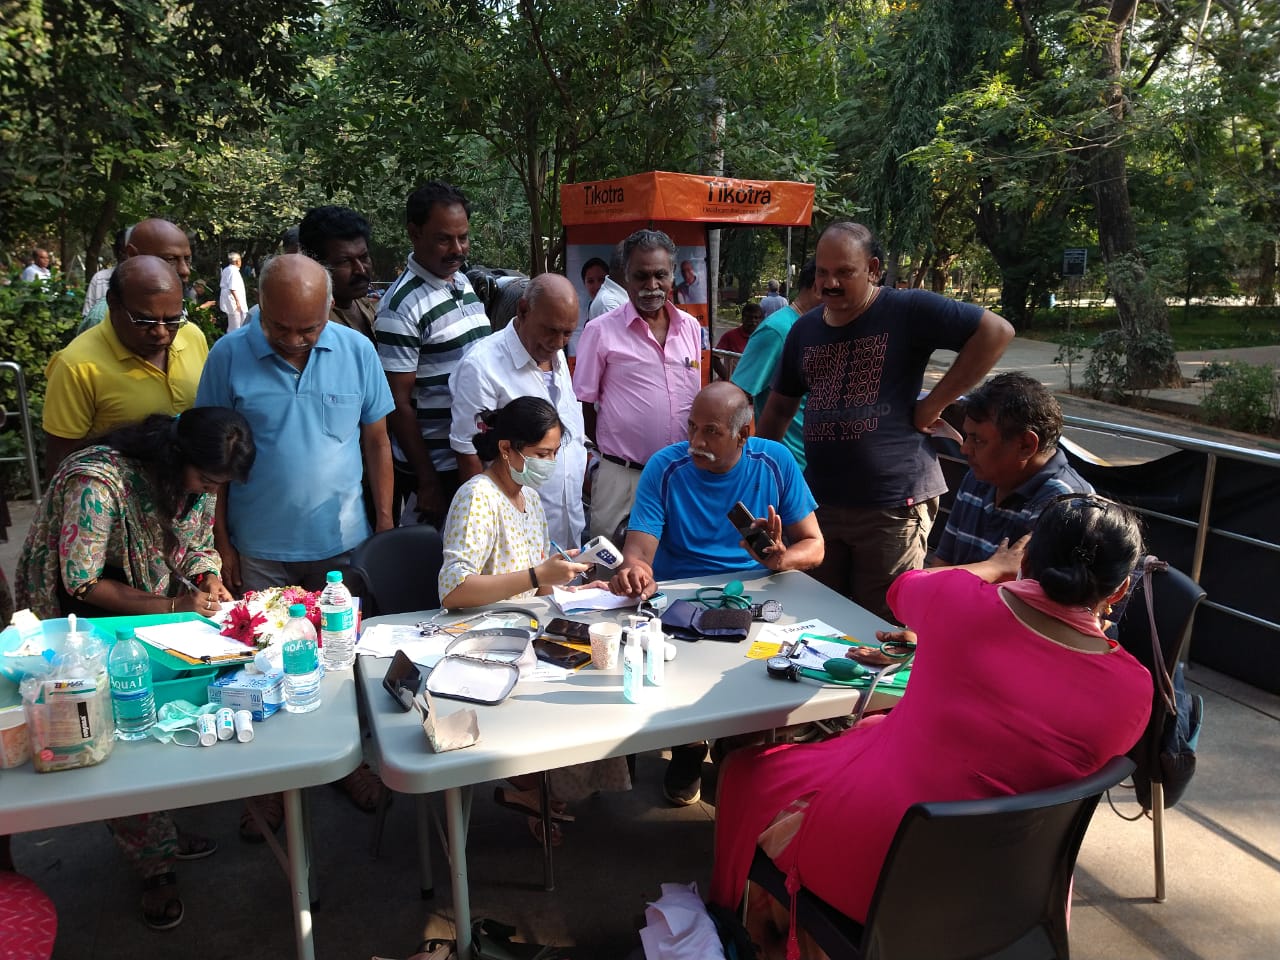 Tikotra's Doctor and Medical Professionals checking vitals at a medical camp in Anna Nagar park, Chennai